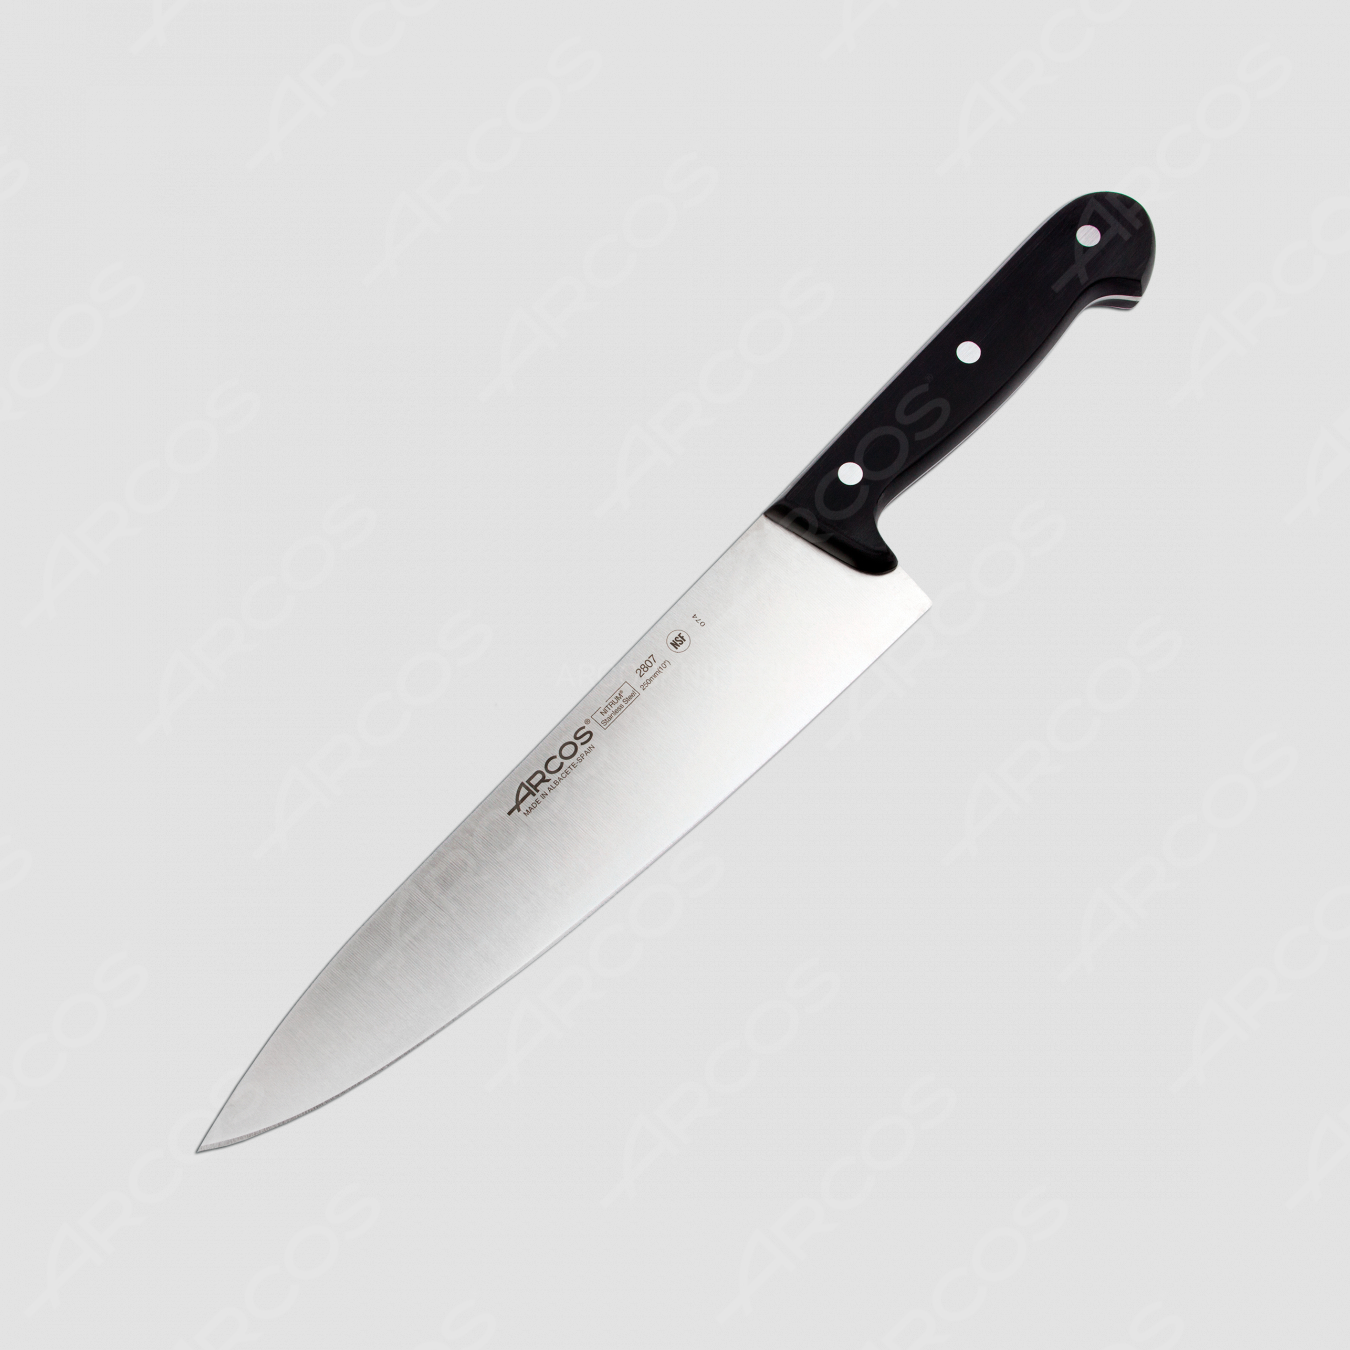 Профессиональный поварской кухонный нож 25 см, серия Universal, ARCOS, Испания